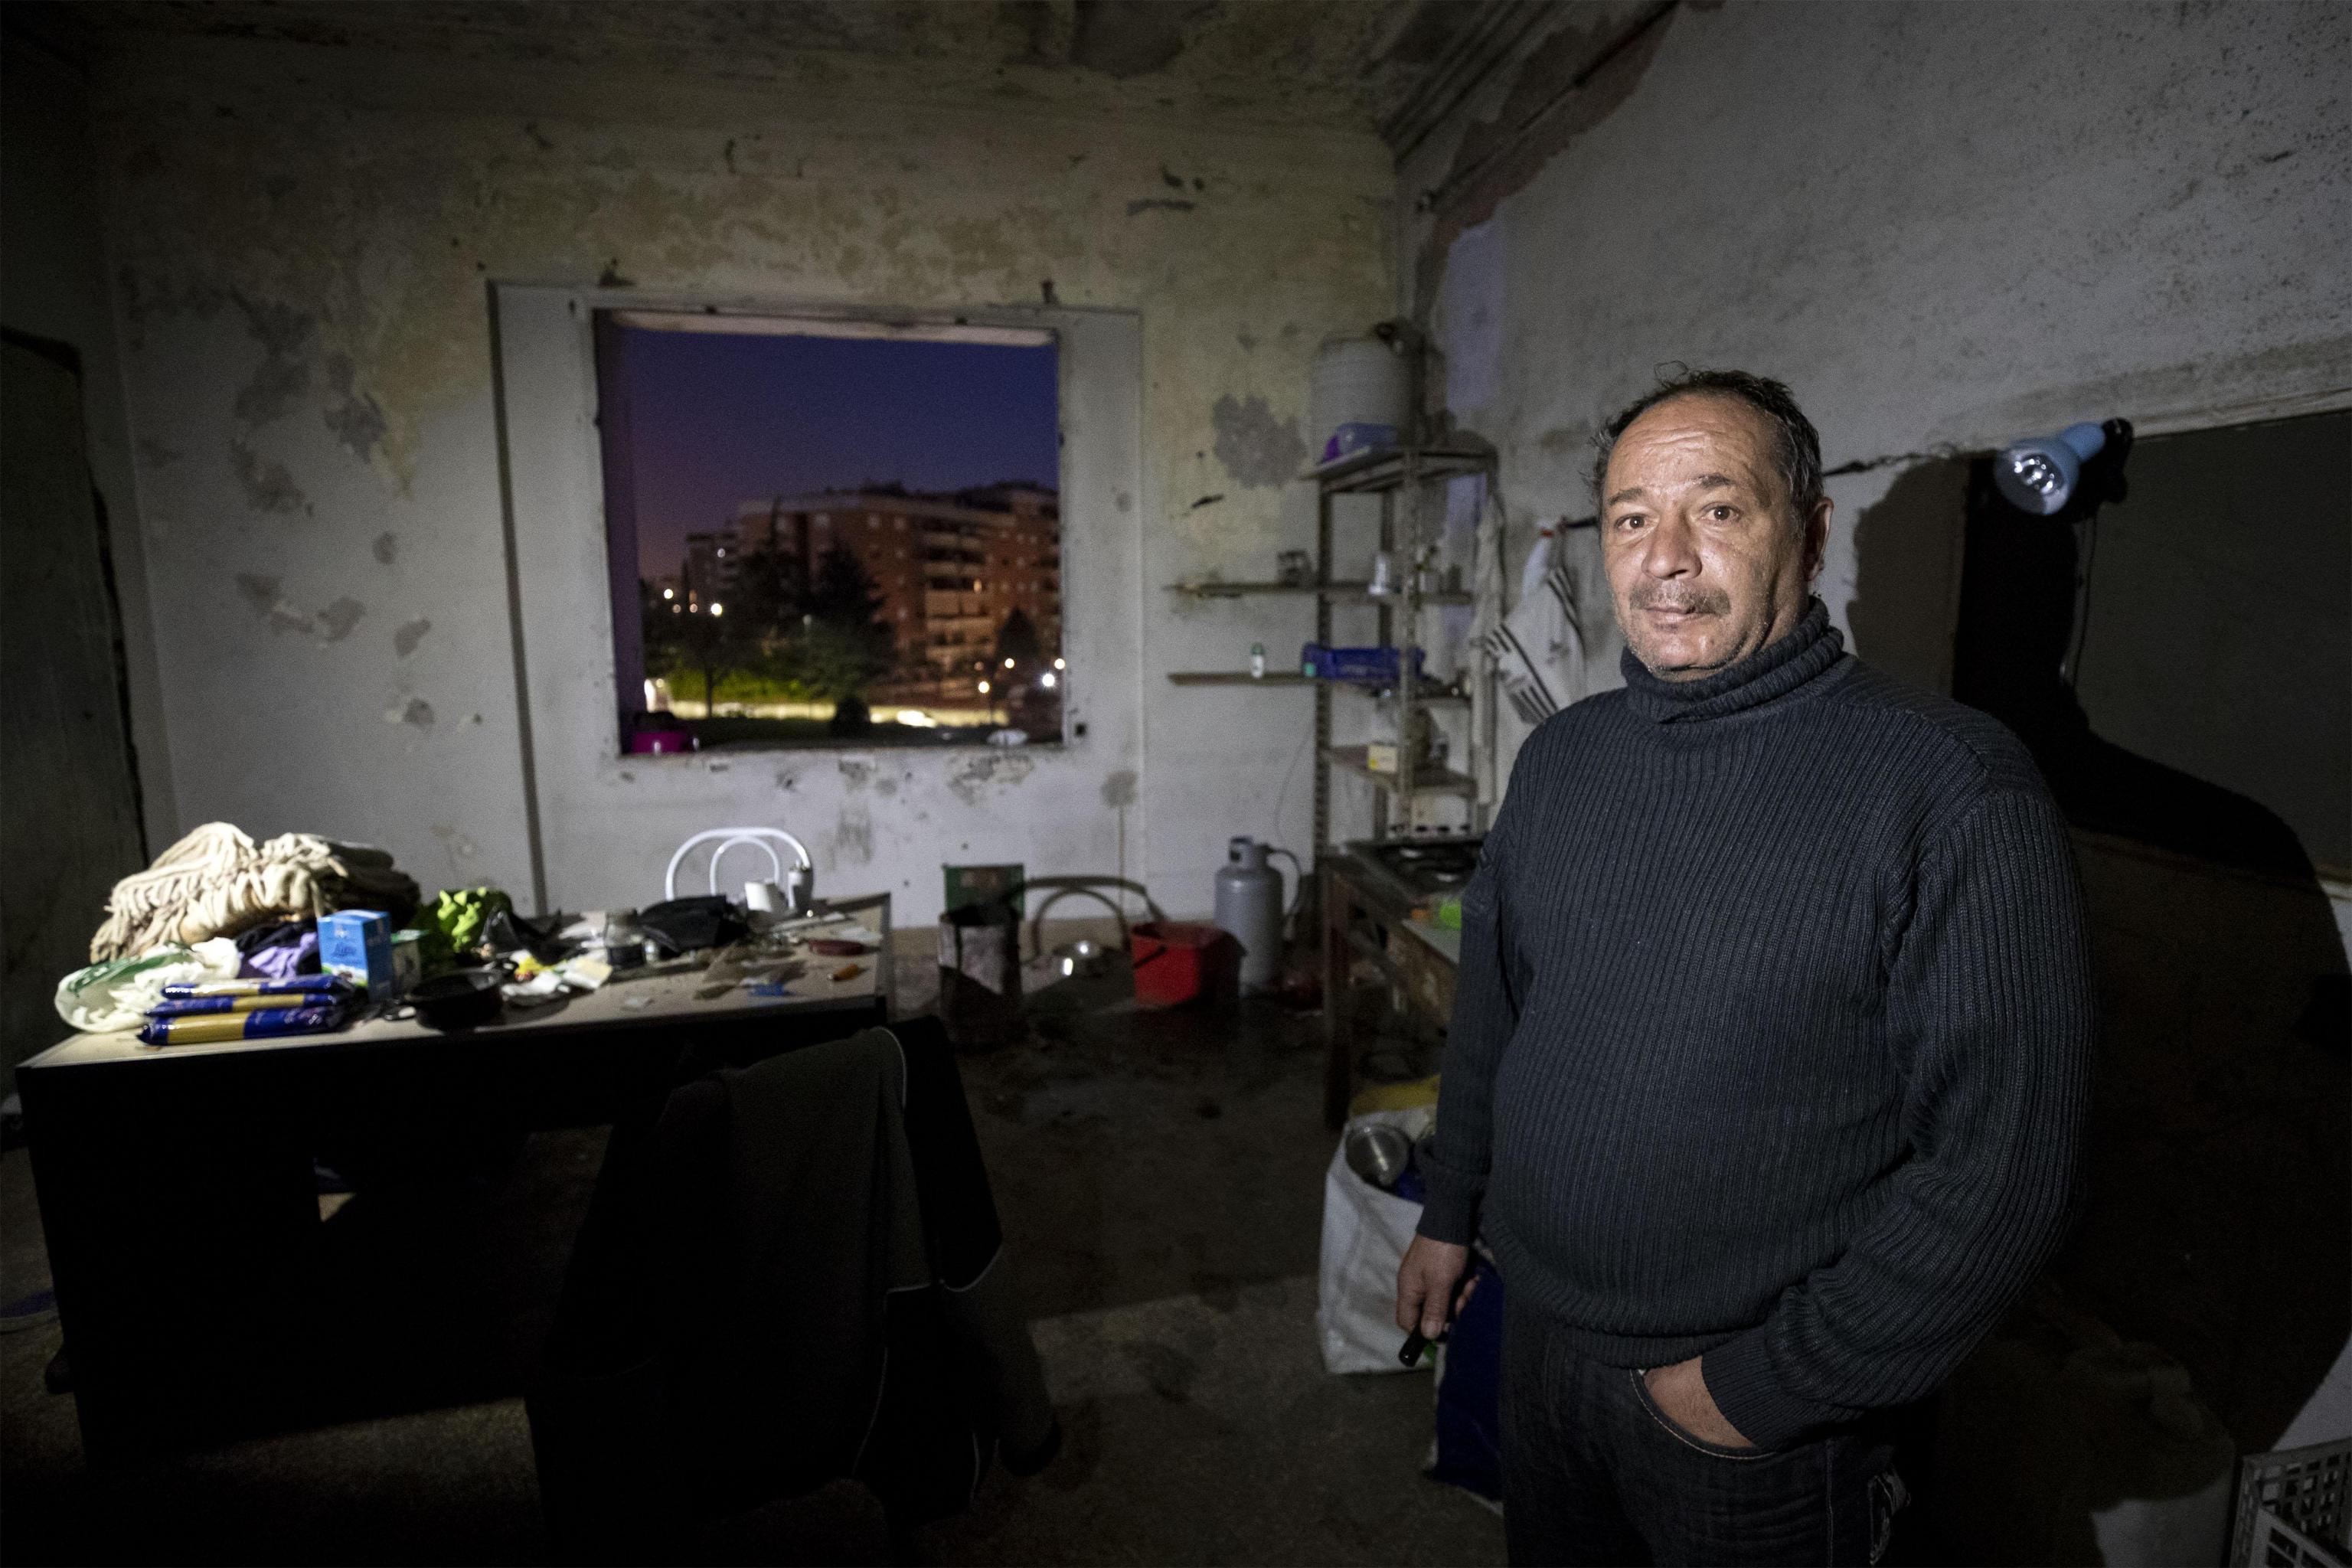 Alessandro un italiano che vive nell'ex fabbrica di penicillina su via Tiburtina a Roma, 10 dicembre 2018
ANSA/PERI PERCOSSI